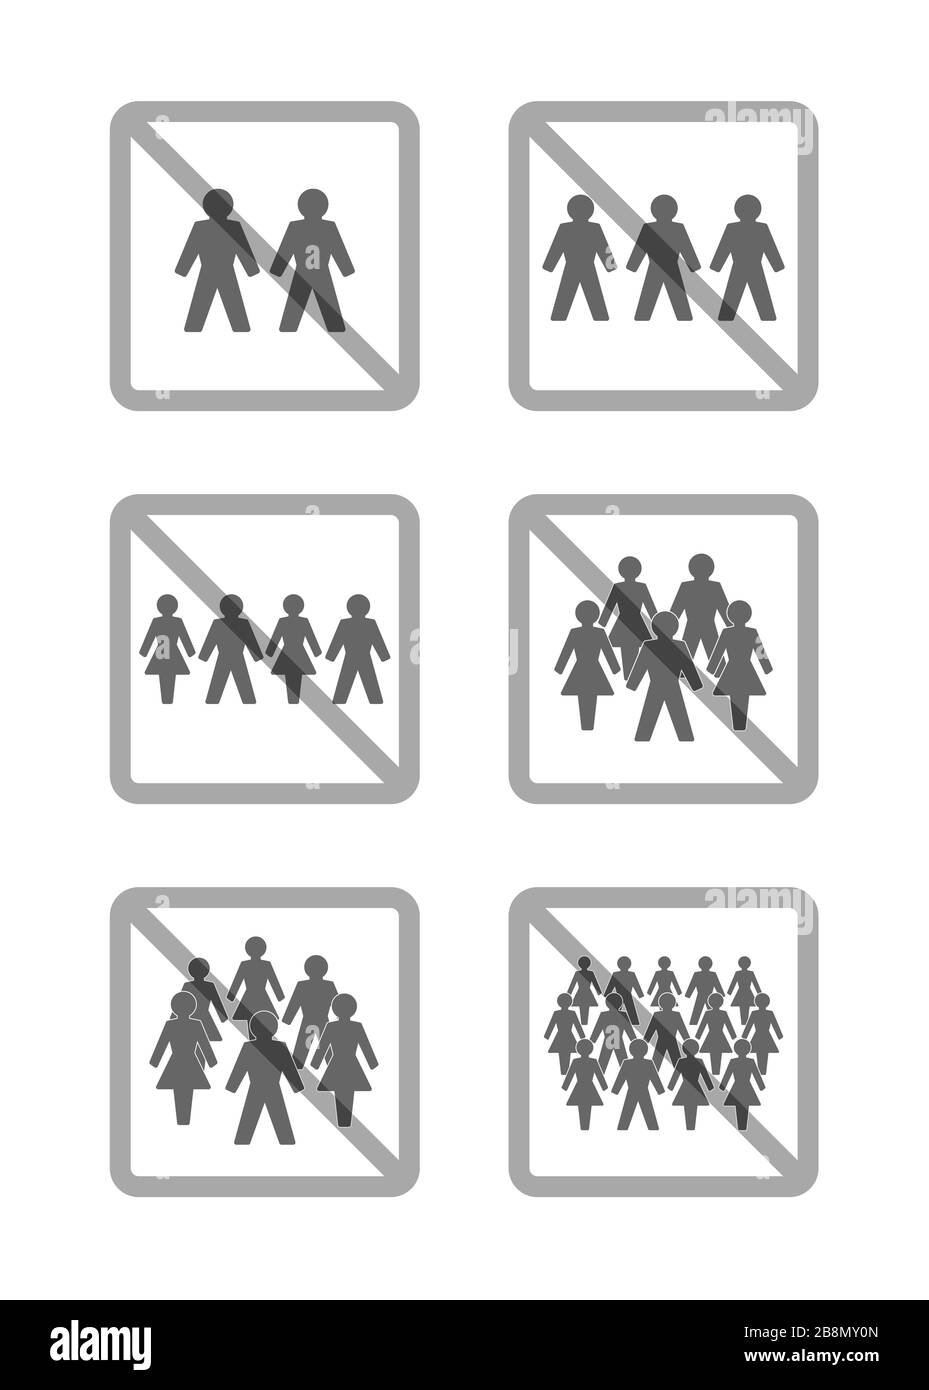 Aucun symbole de collecte. Interdiction de montage pour deux, trois, quatre, cinq, six personnes ou plus - illustration sur fond blanc. Banque D'Images